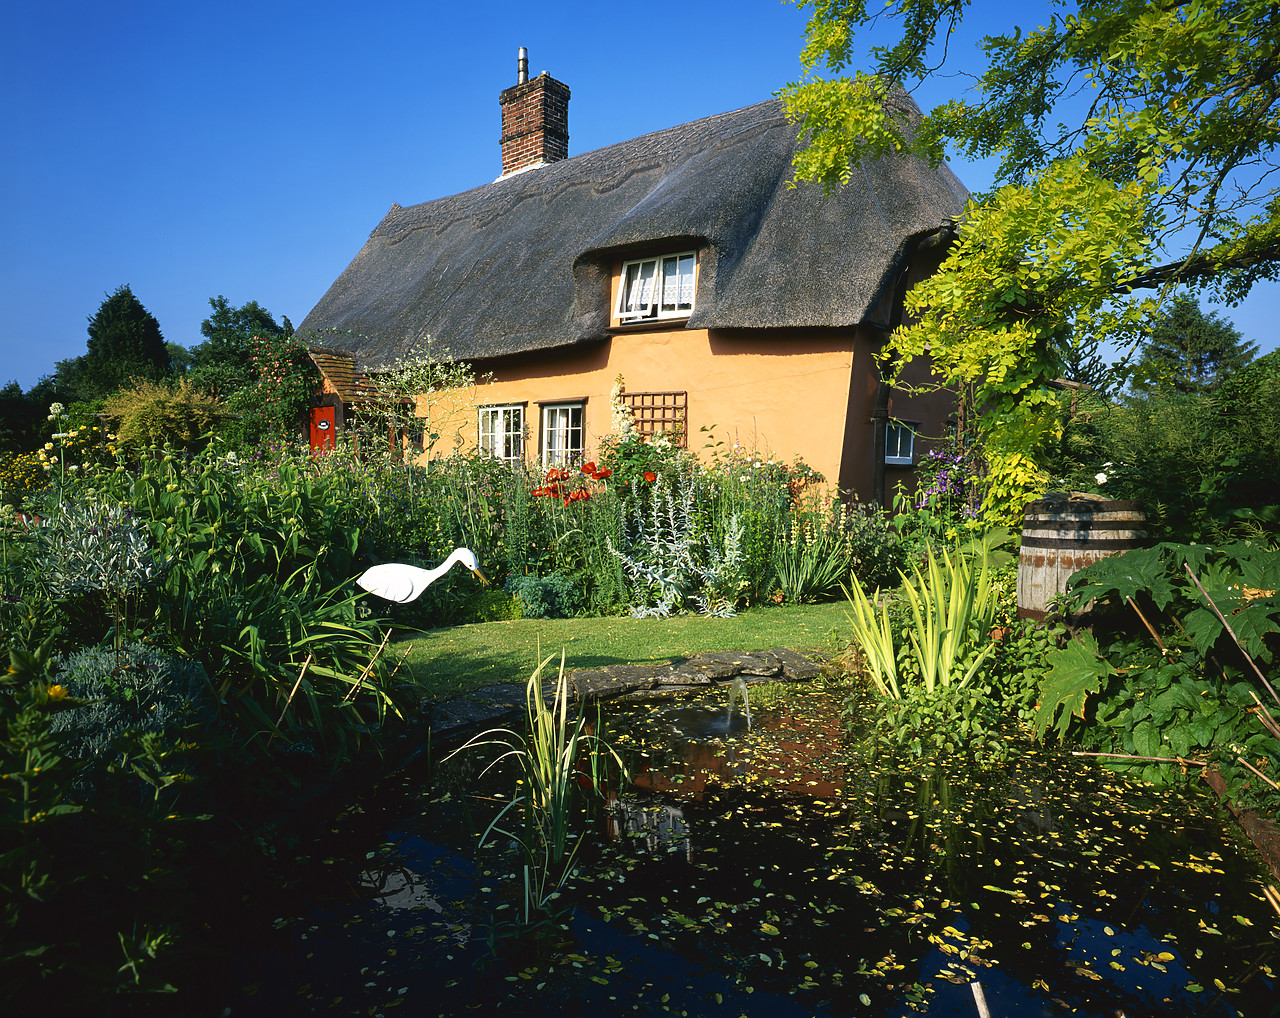 #040142-1 - Thatched Cottage & Garden Pond, Suffolk, England